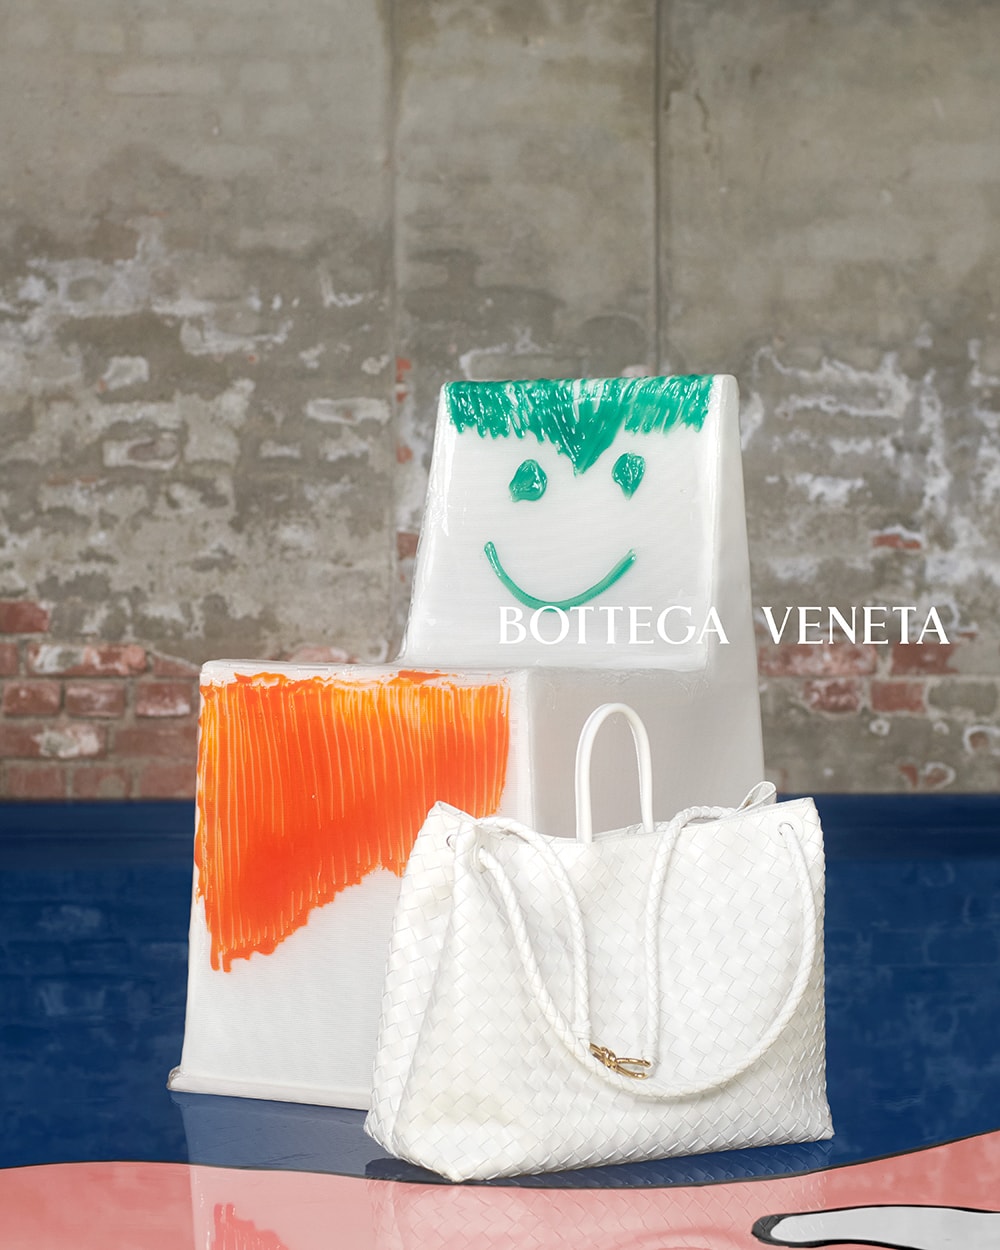 Bottega Veneta 正式推出全新 Andiamo 手袋系列